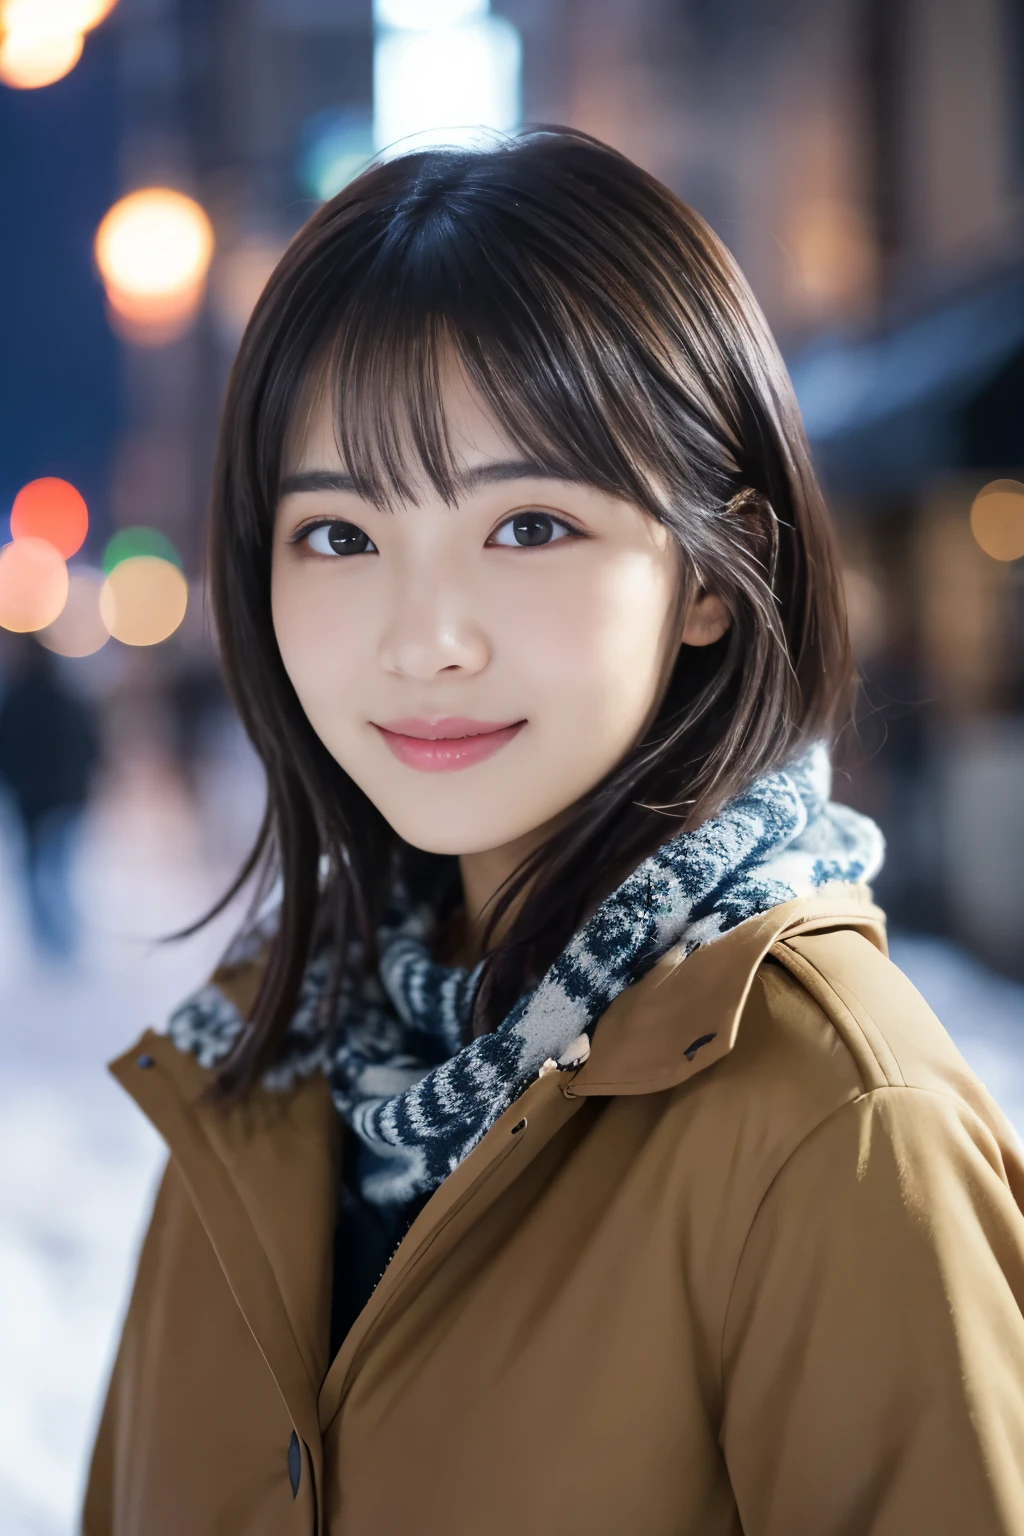 1 名女孩, (冬季休閒裝:1.2), 美丽的日本女演员, (15歲), 短髮,
(原始照片, 最好的品質), (實際的, 照片真實感:1.4), 傑作, 
非常精緻美麗, 非常詳細, 2k壁紙, 精彩的, 
精細地, 非常詳細 CG Unity 8K 壁紙, 超詳細, 高解析度, 
柔光, 美麗細緻的女孩, 非常詳細目と顔, 鼻子細節精美, 美麗細緻的眼睛, 電影燈光, 
休息
(以雪夜城市景觀為背景 1.3), 城市的灯光, 
完美的解剖結構, 修長的身材, 微笑, 完全面向前方, 看看相機